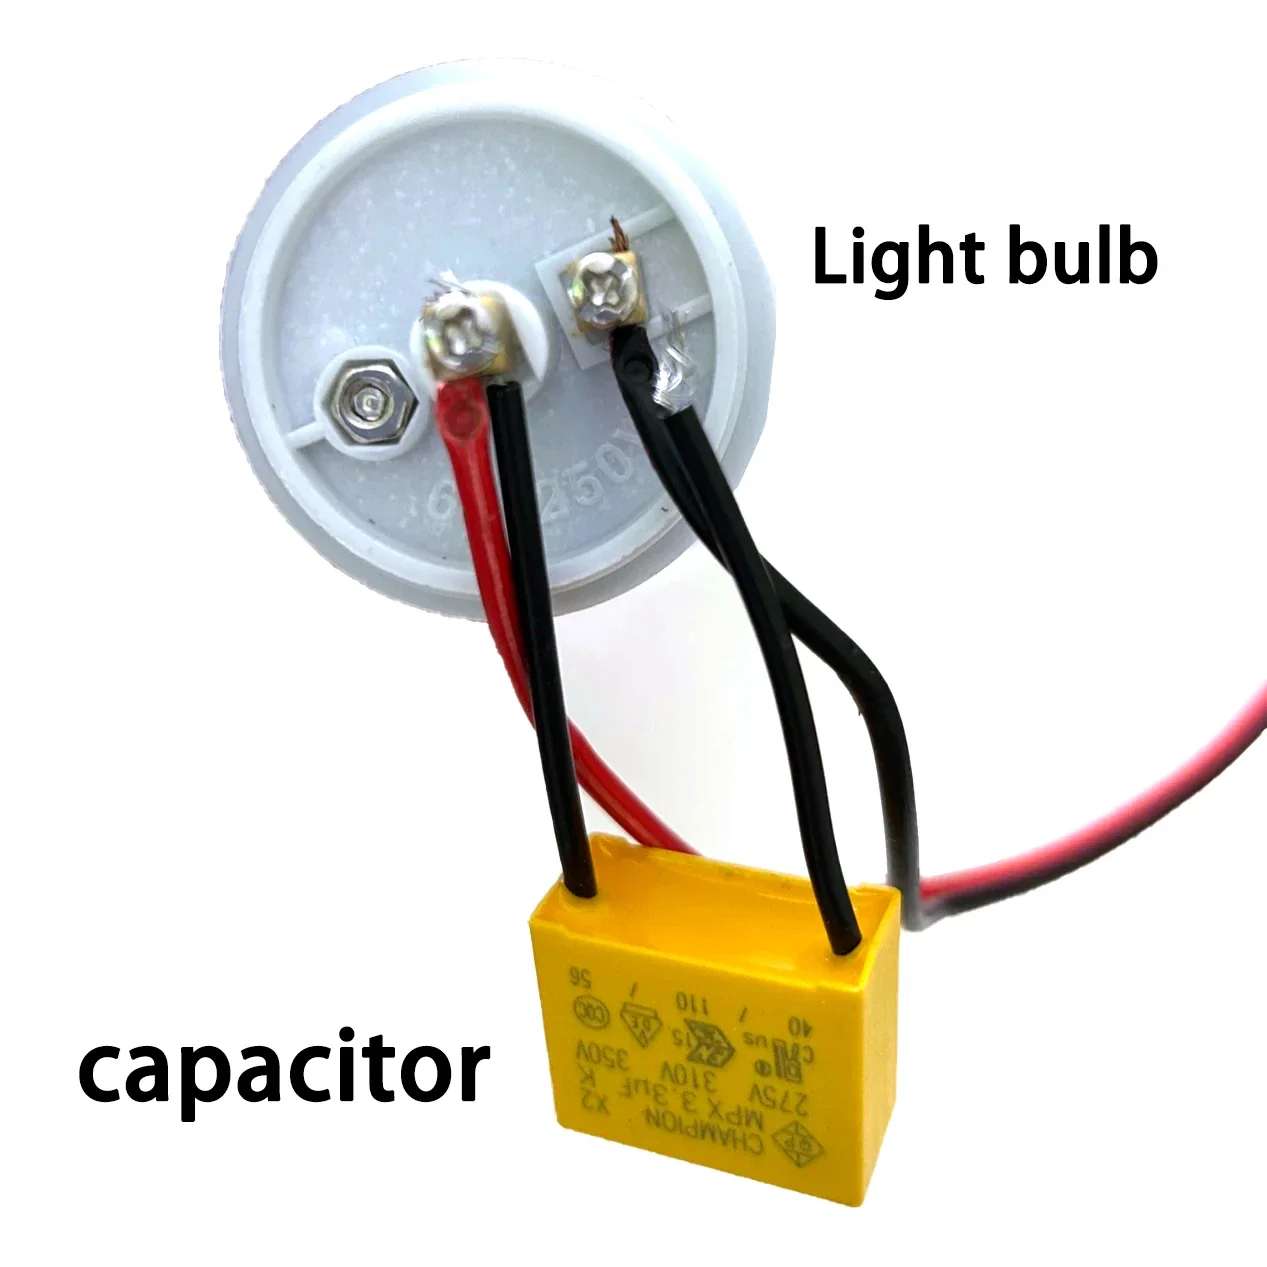 Kondensator bezpieczeństwa z lampą błyskową zapobiegającą światłom, odpowiedni do inteligentnego dotyku bez neutralnych wentylatorów elektrycznych, przełączników itp3.3UF, 275VA